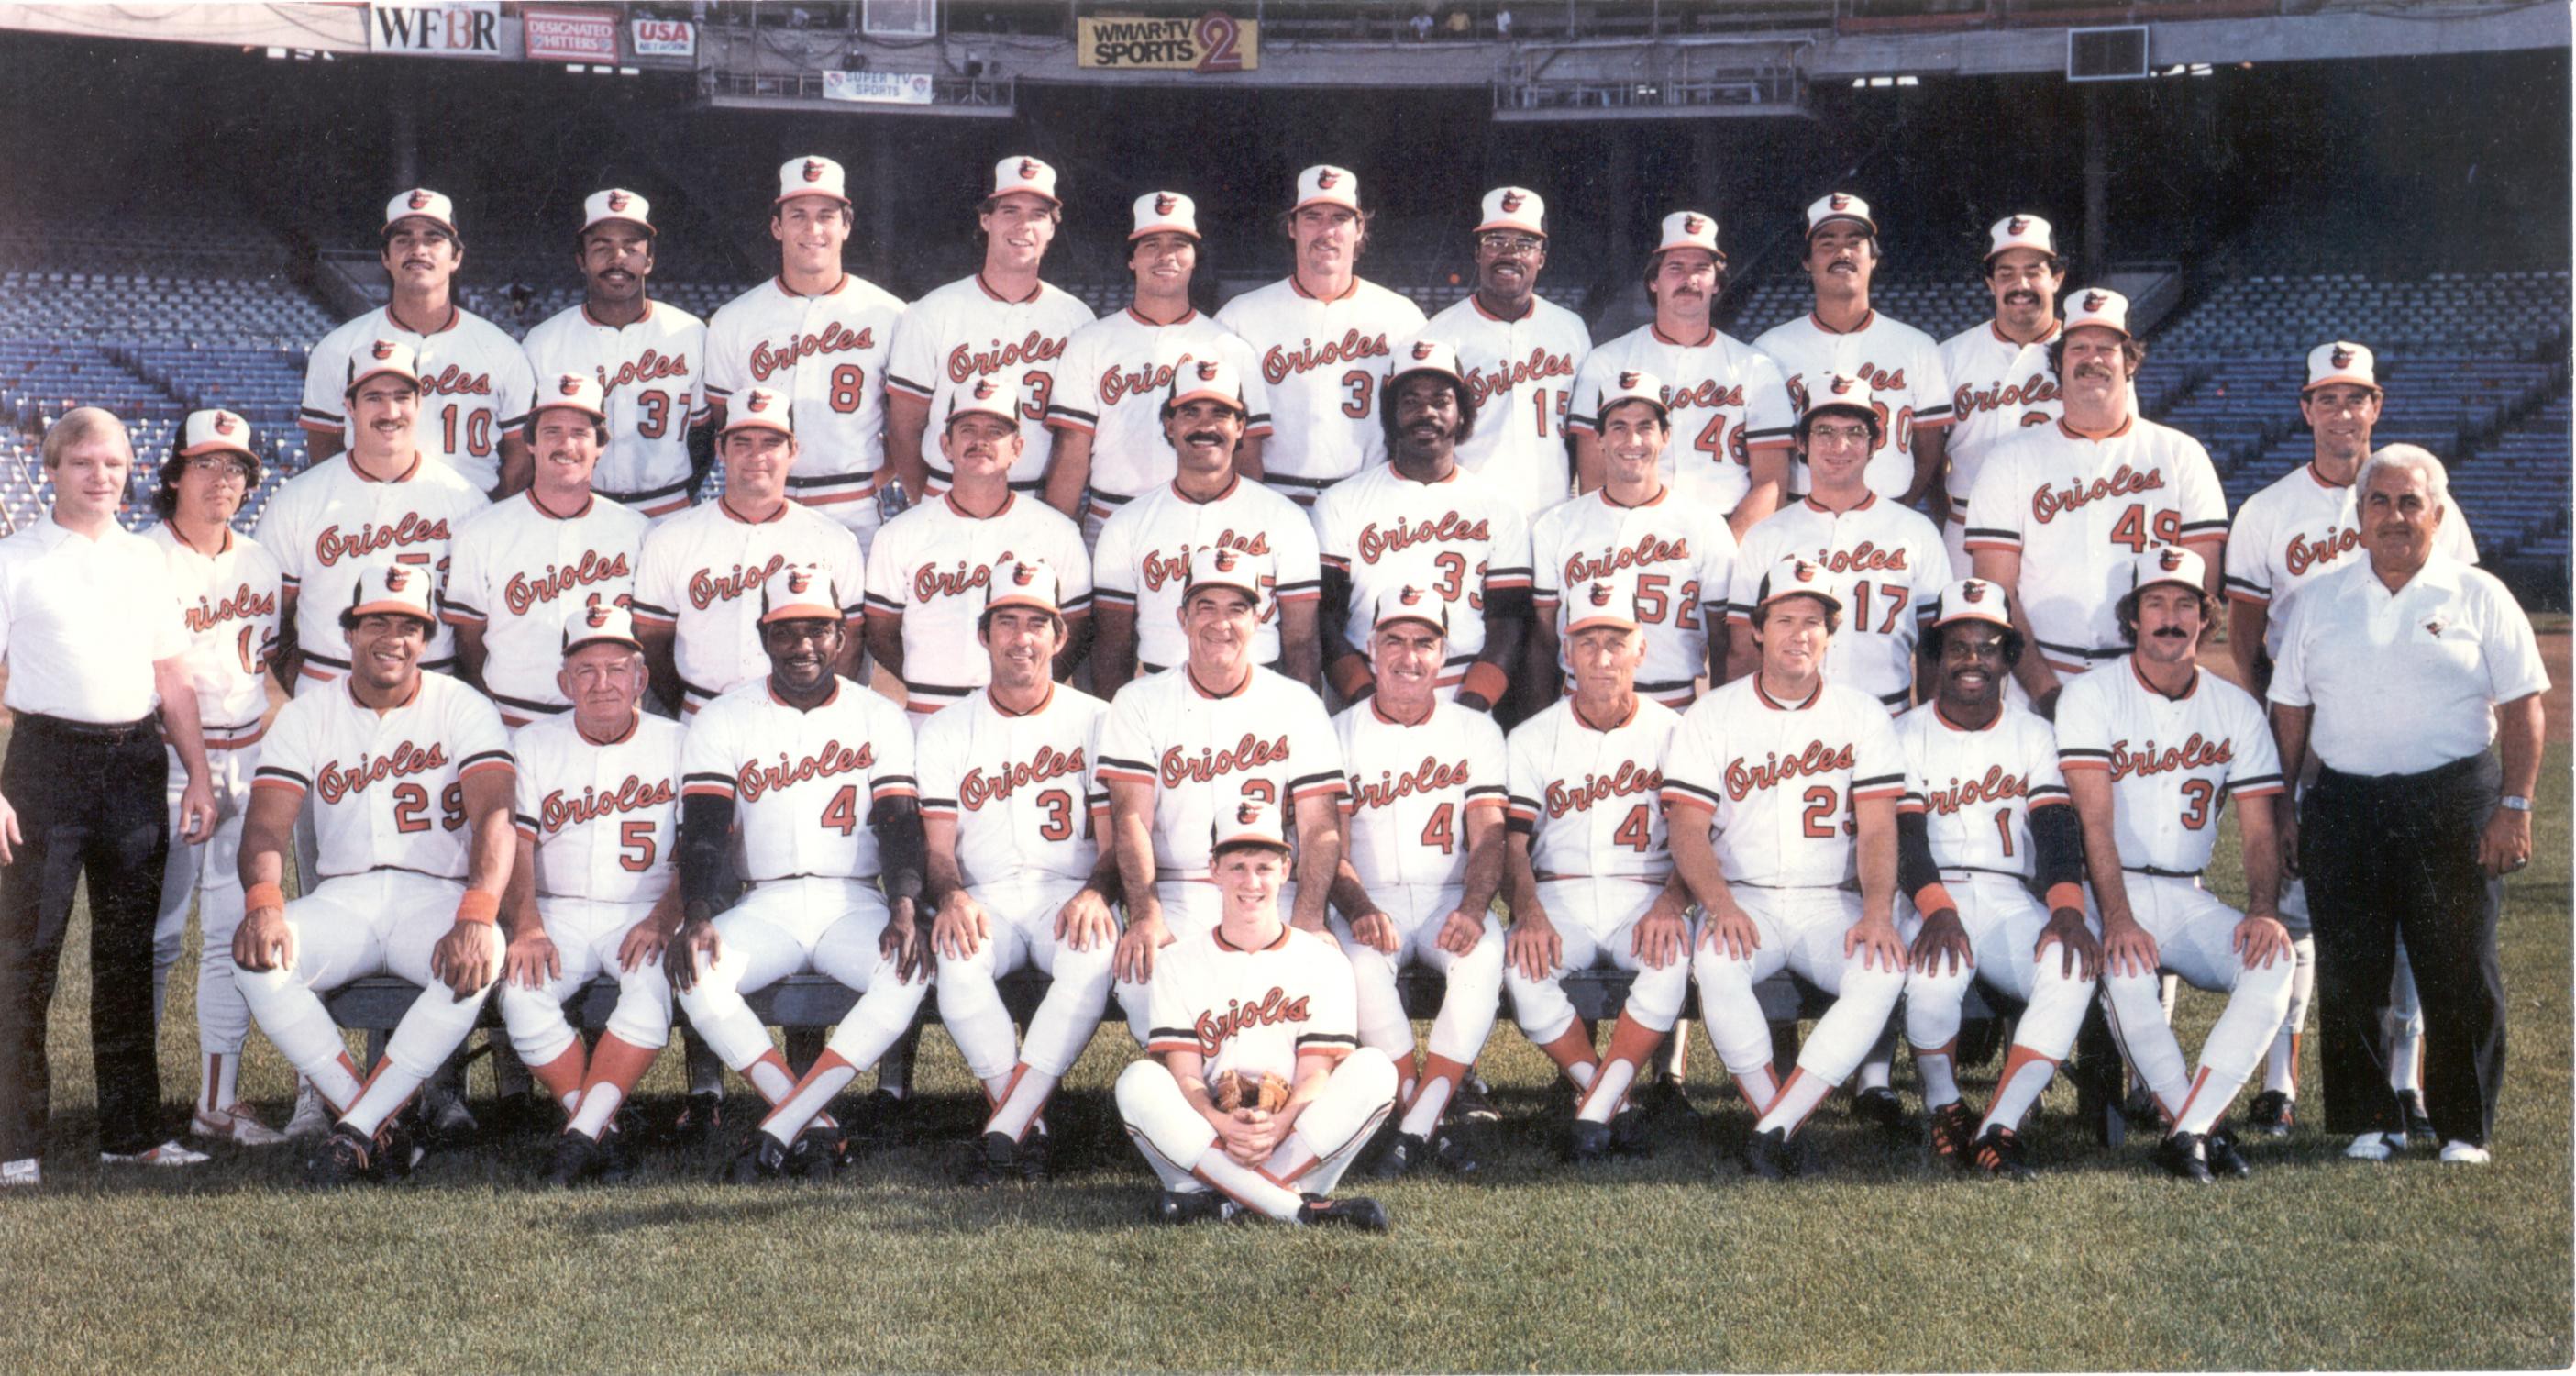 Baseball Program World Series 1983 Baltimore Orioles Philadelphia